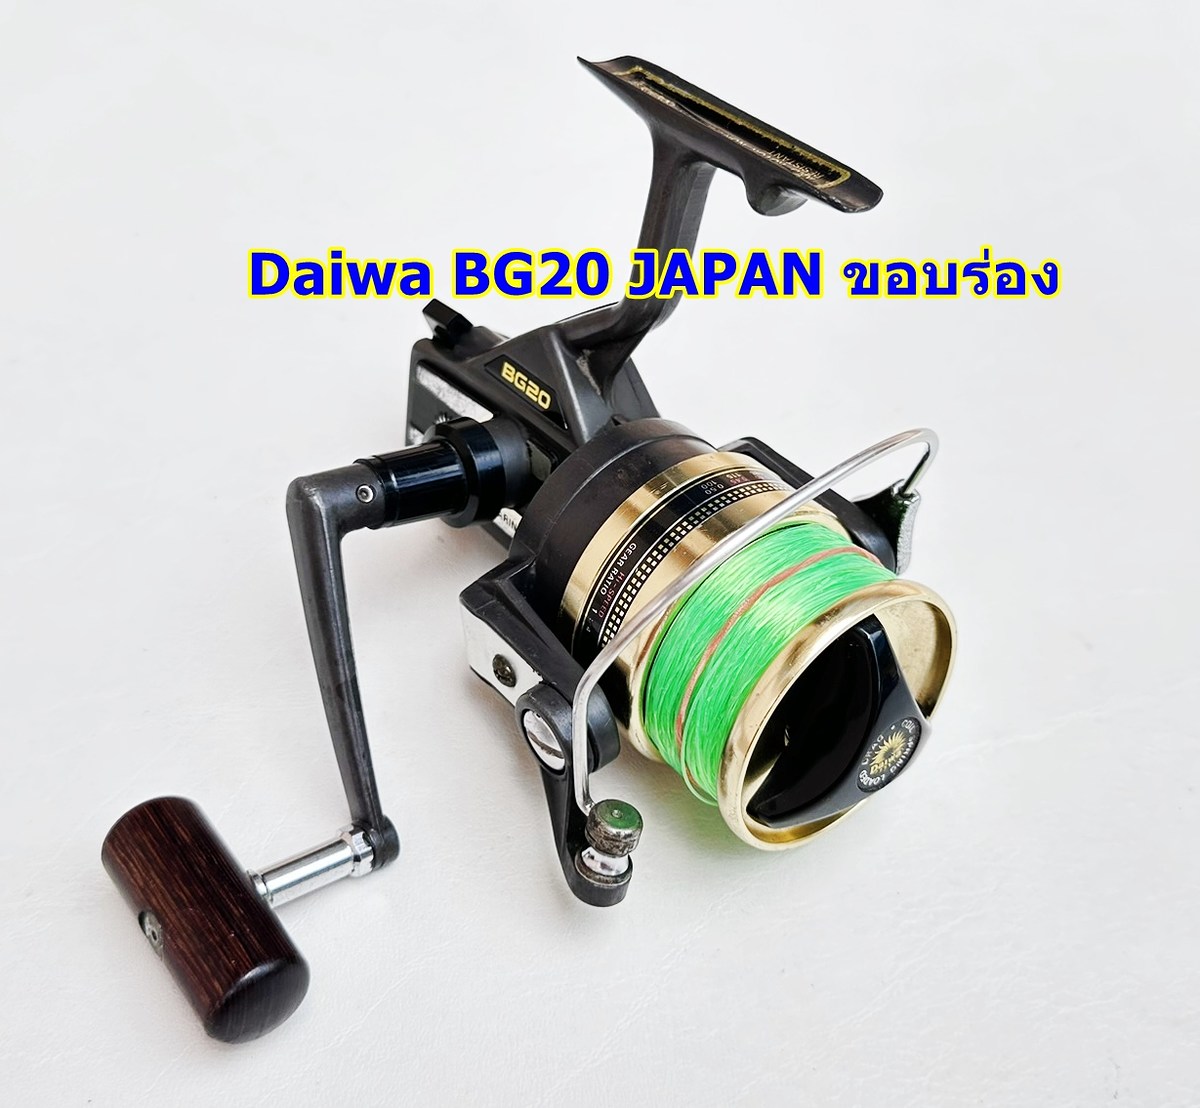 Daiwa BG20 Japan ขอบร่อง